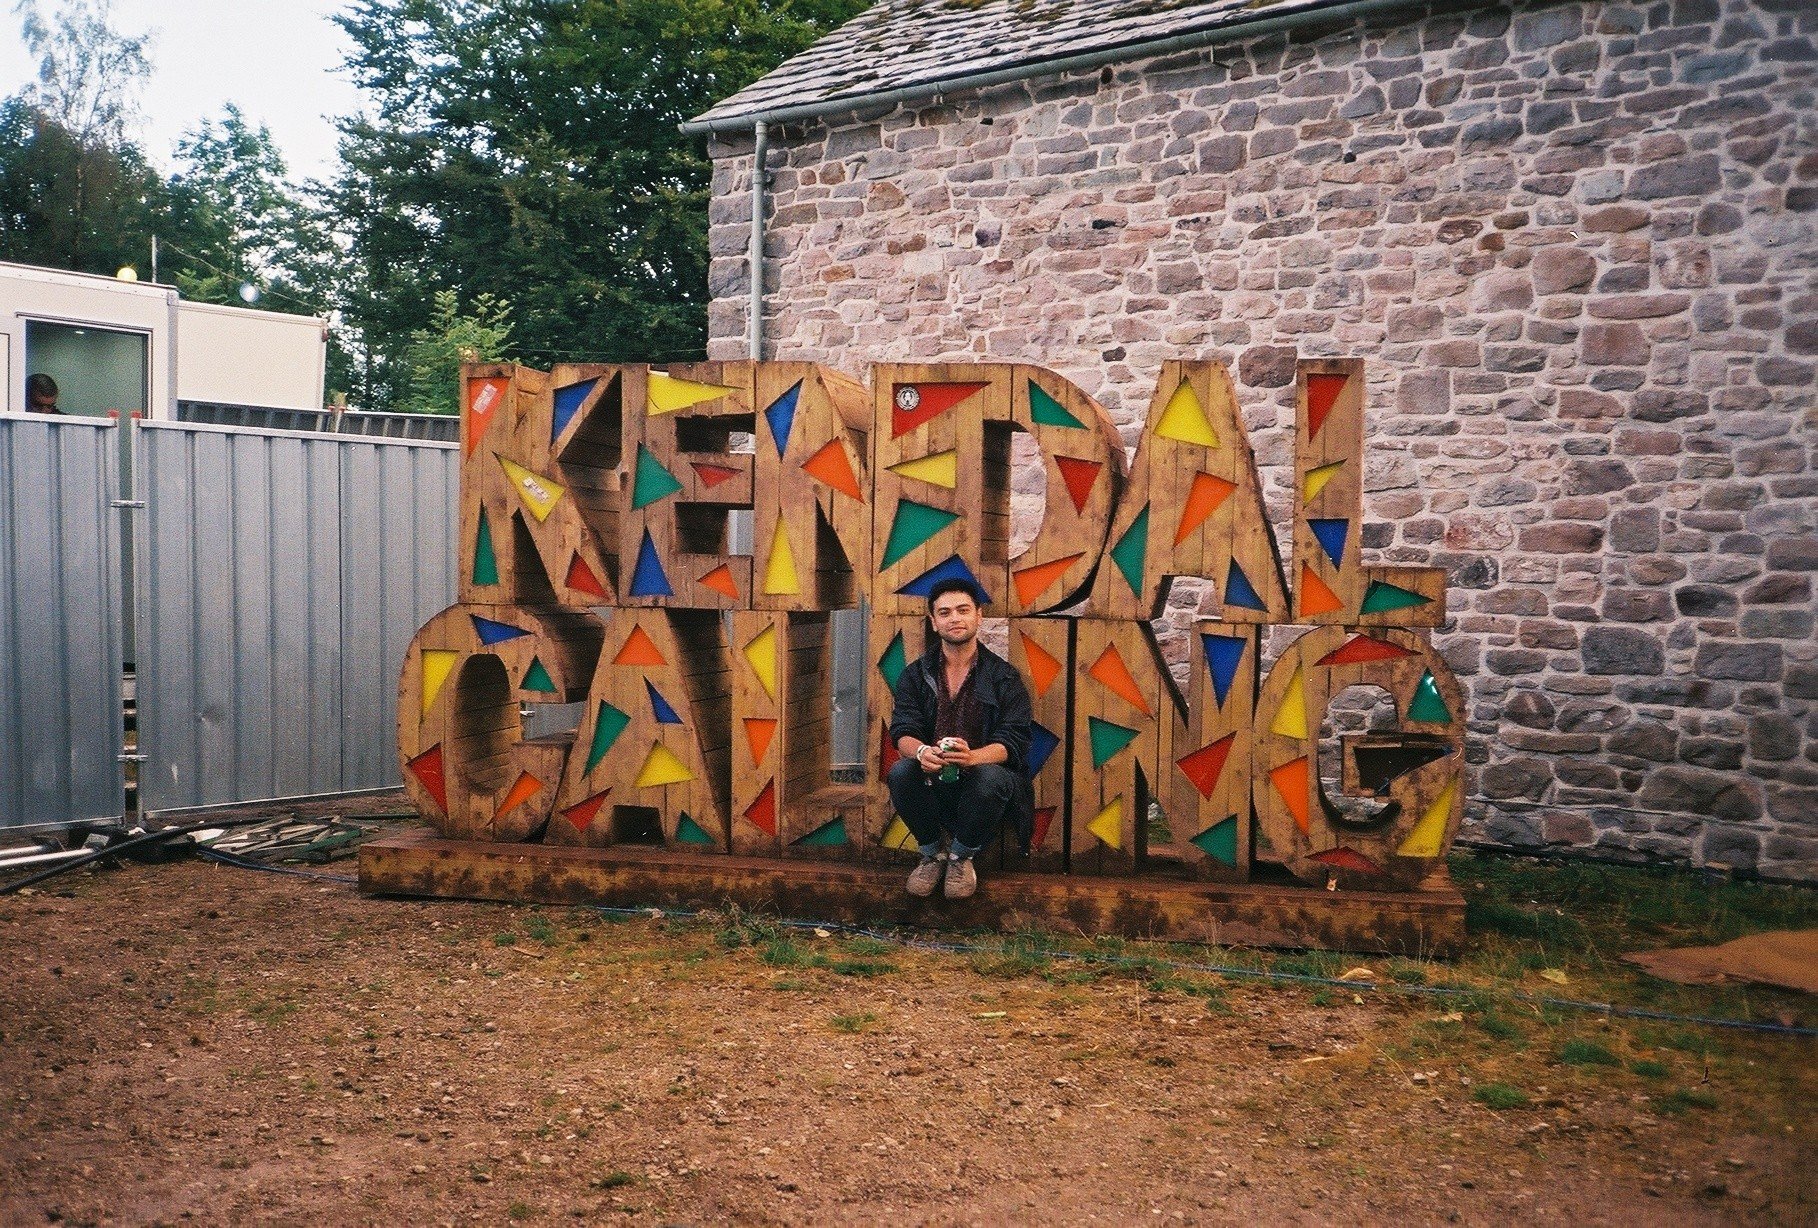 Ed at Kendal Calling